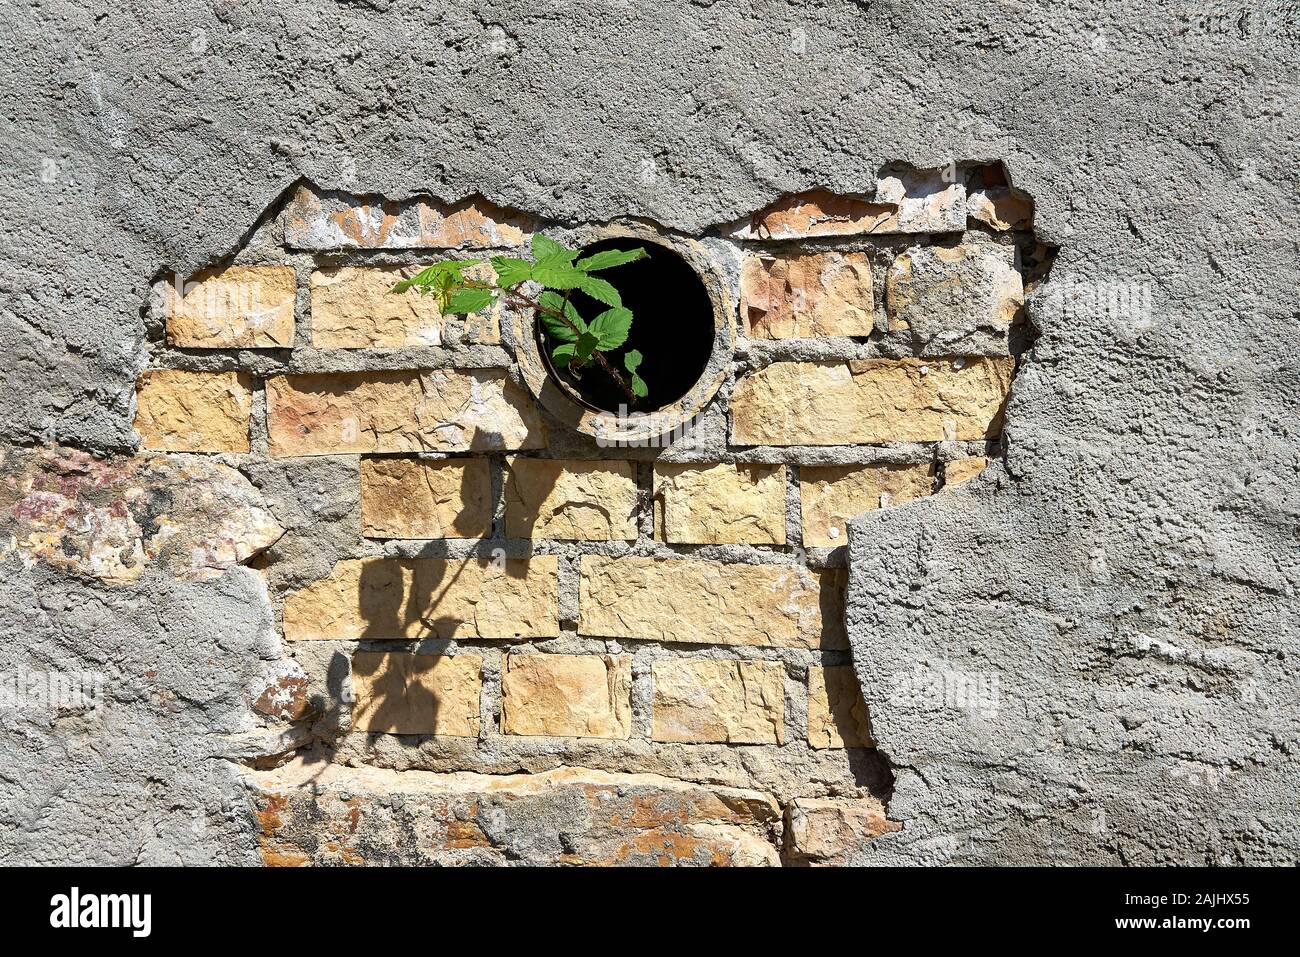 Le pavage brisé révèle un vieux mur de pierre avec un excès de mortier et tuyau de vidange avec une plante à peine petite essayant de gagner un pied pour la croissance. Banque D'Images